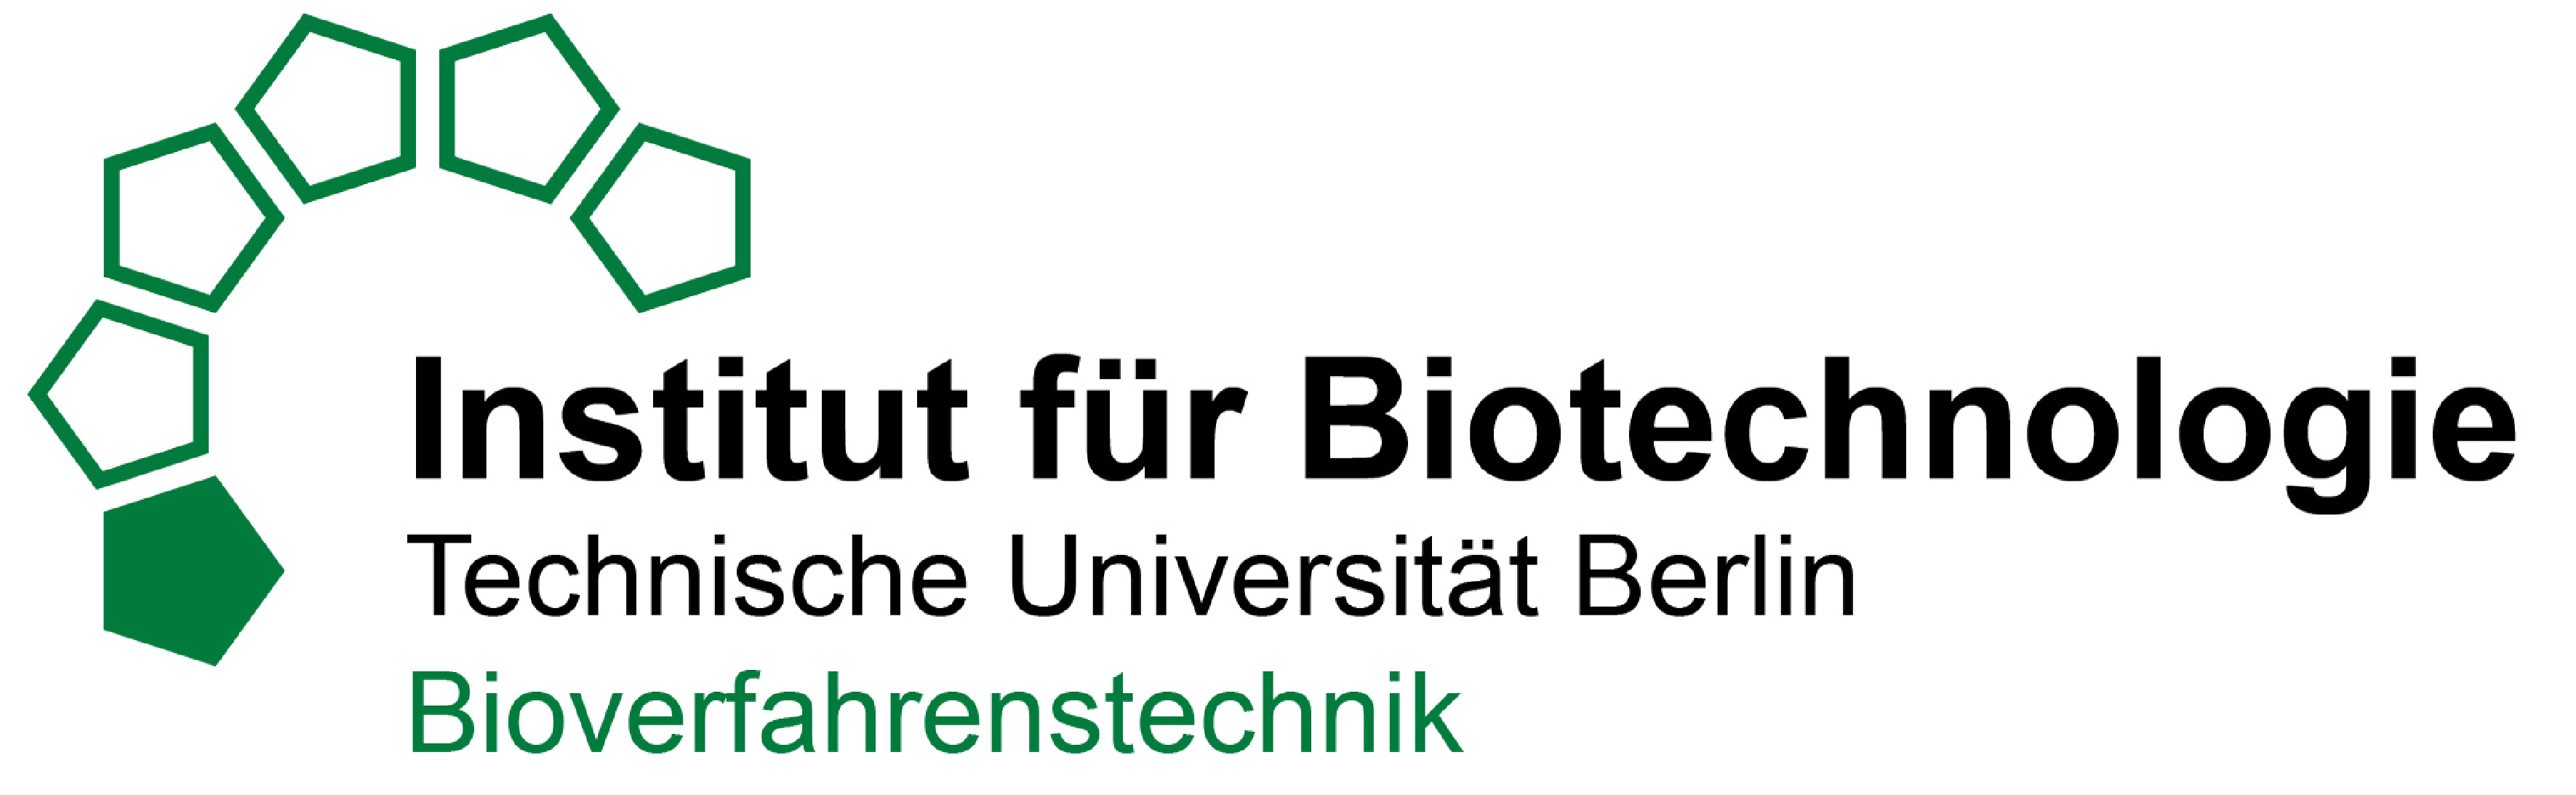 Logo Bioverfahrenstechnik, Institut für Biotechnologie, TU Berlin